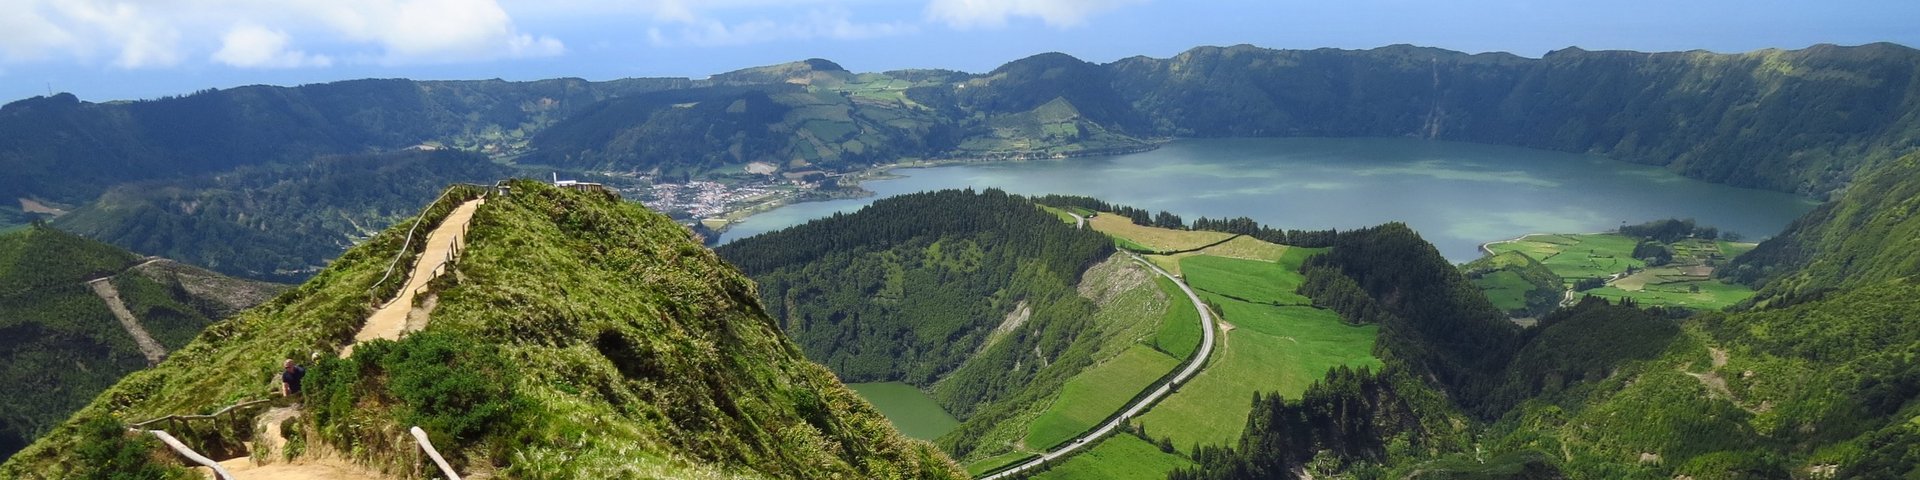 Wanderpfad mit Aussicht auf die Insel São Miguel auf den Azoren